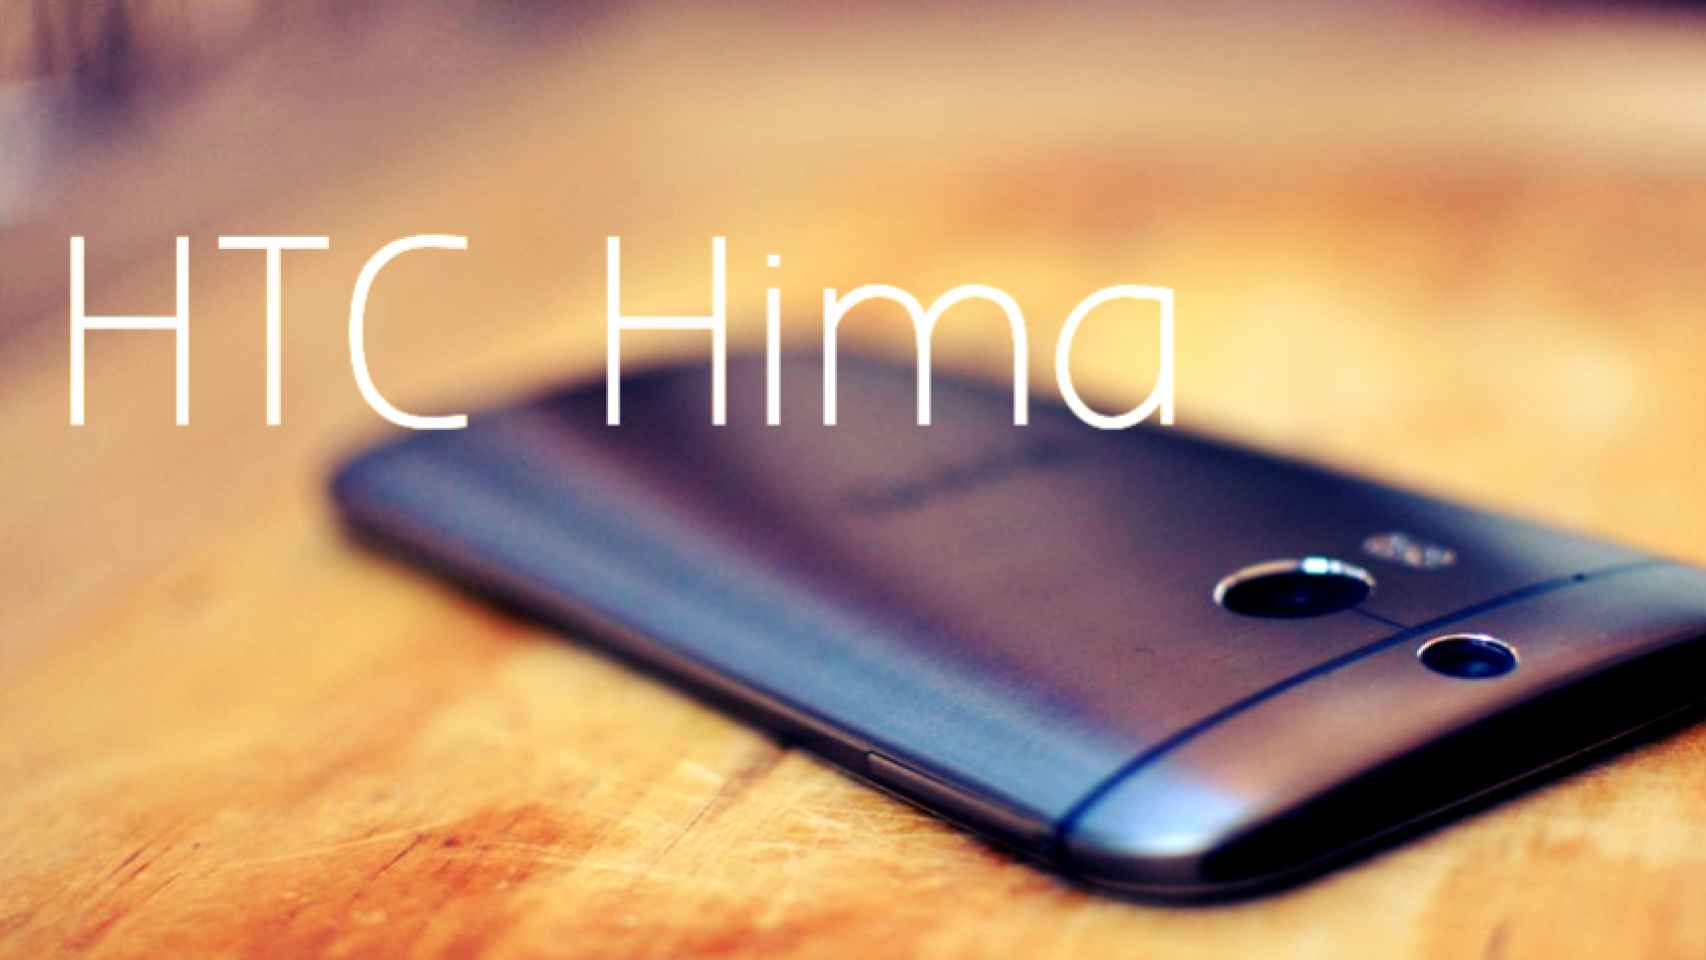 Las características del HTC Hima o HTC M9, filtradas